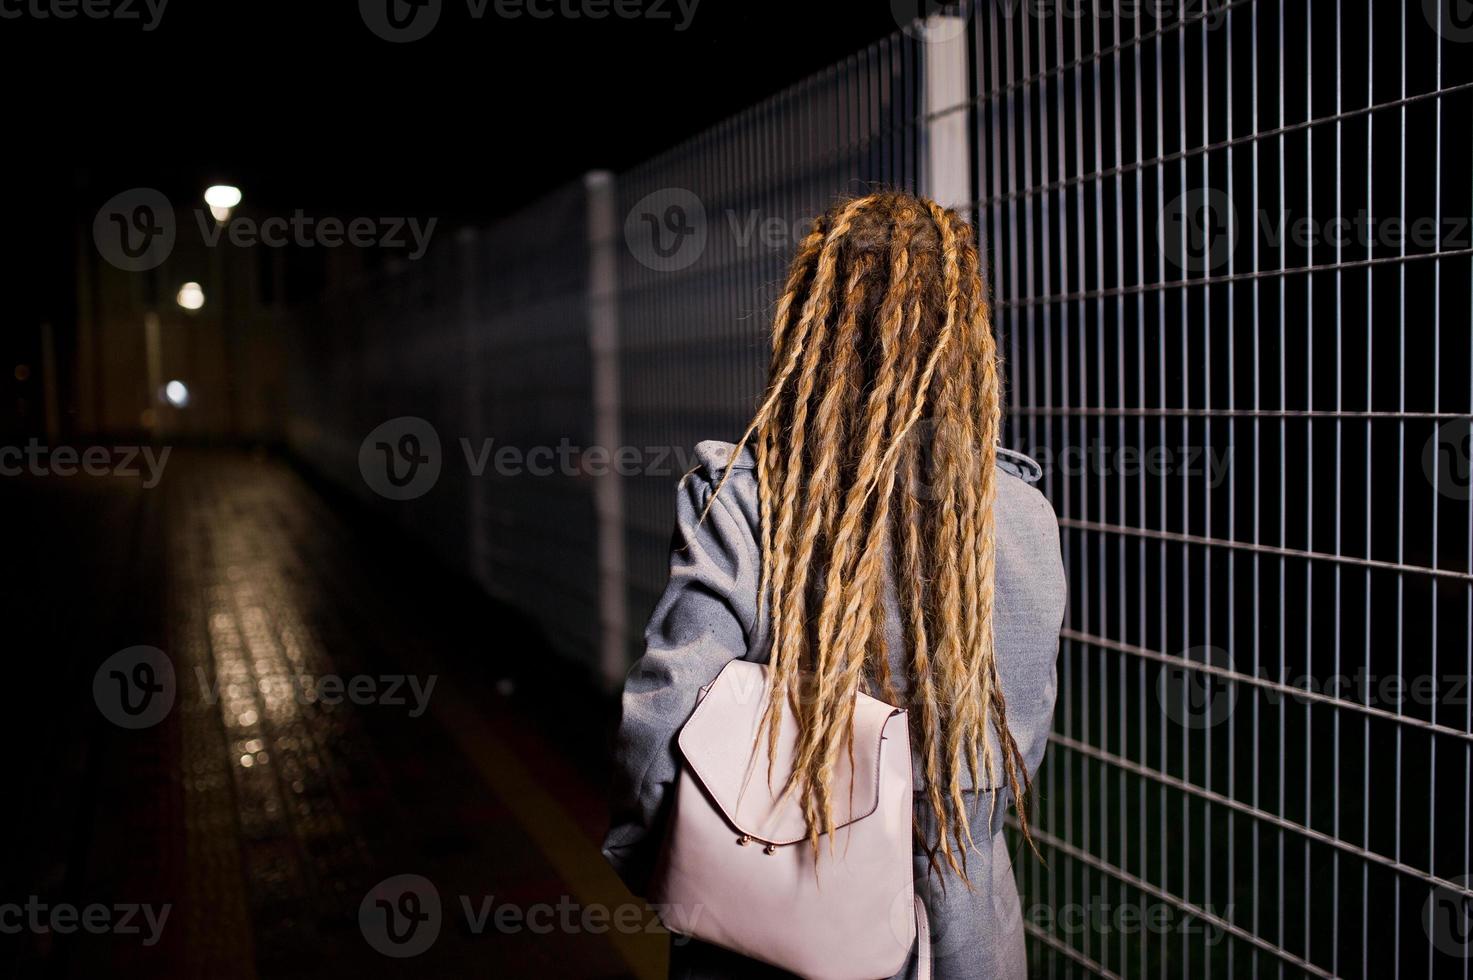 fille avec des dreadlocks marchant dans la rue de nuit de la ville. photo